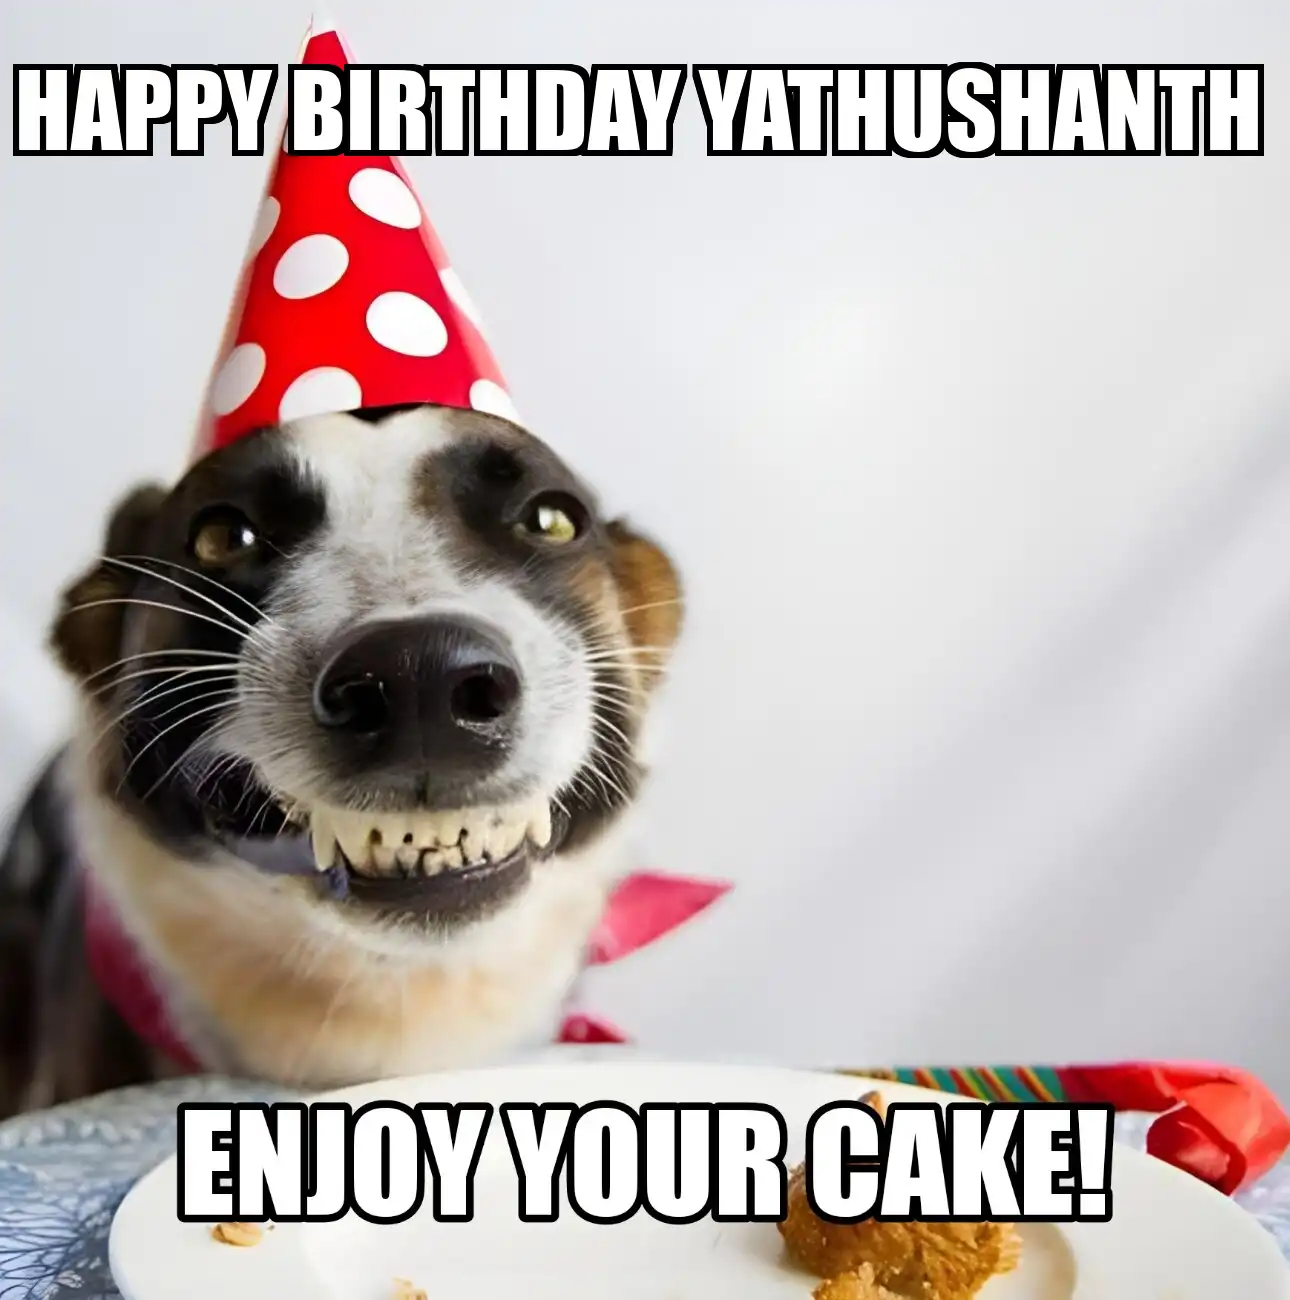 Happy Birthday Yathushanth Enjoy Your Cake Dog Meme